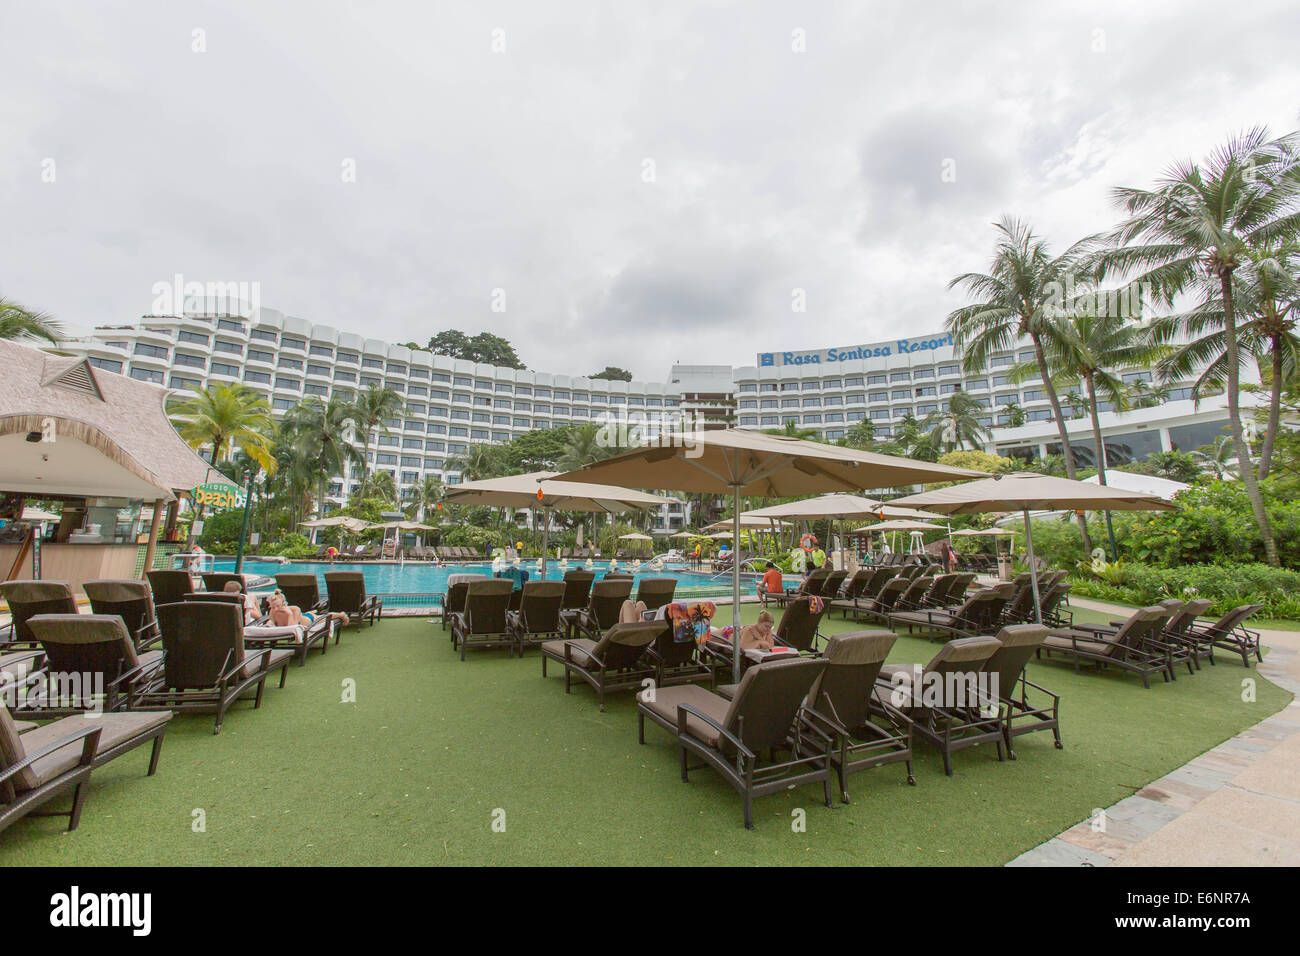 hotel Rasa Sentosa Resort in Singapore Stock Photo